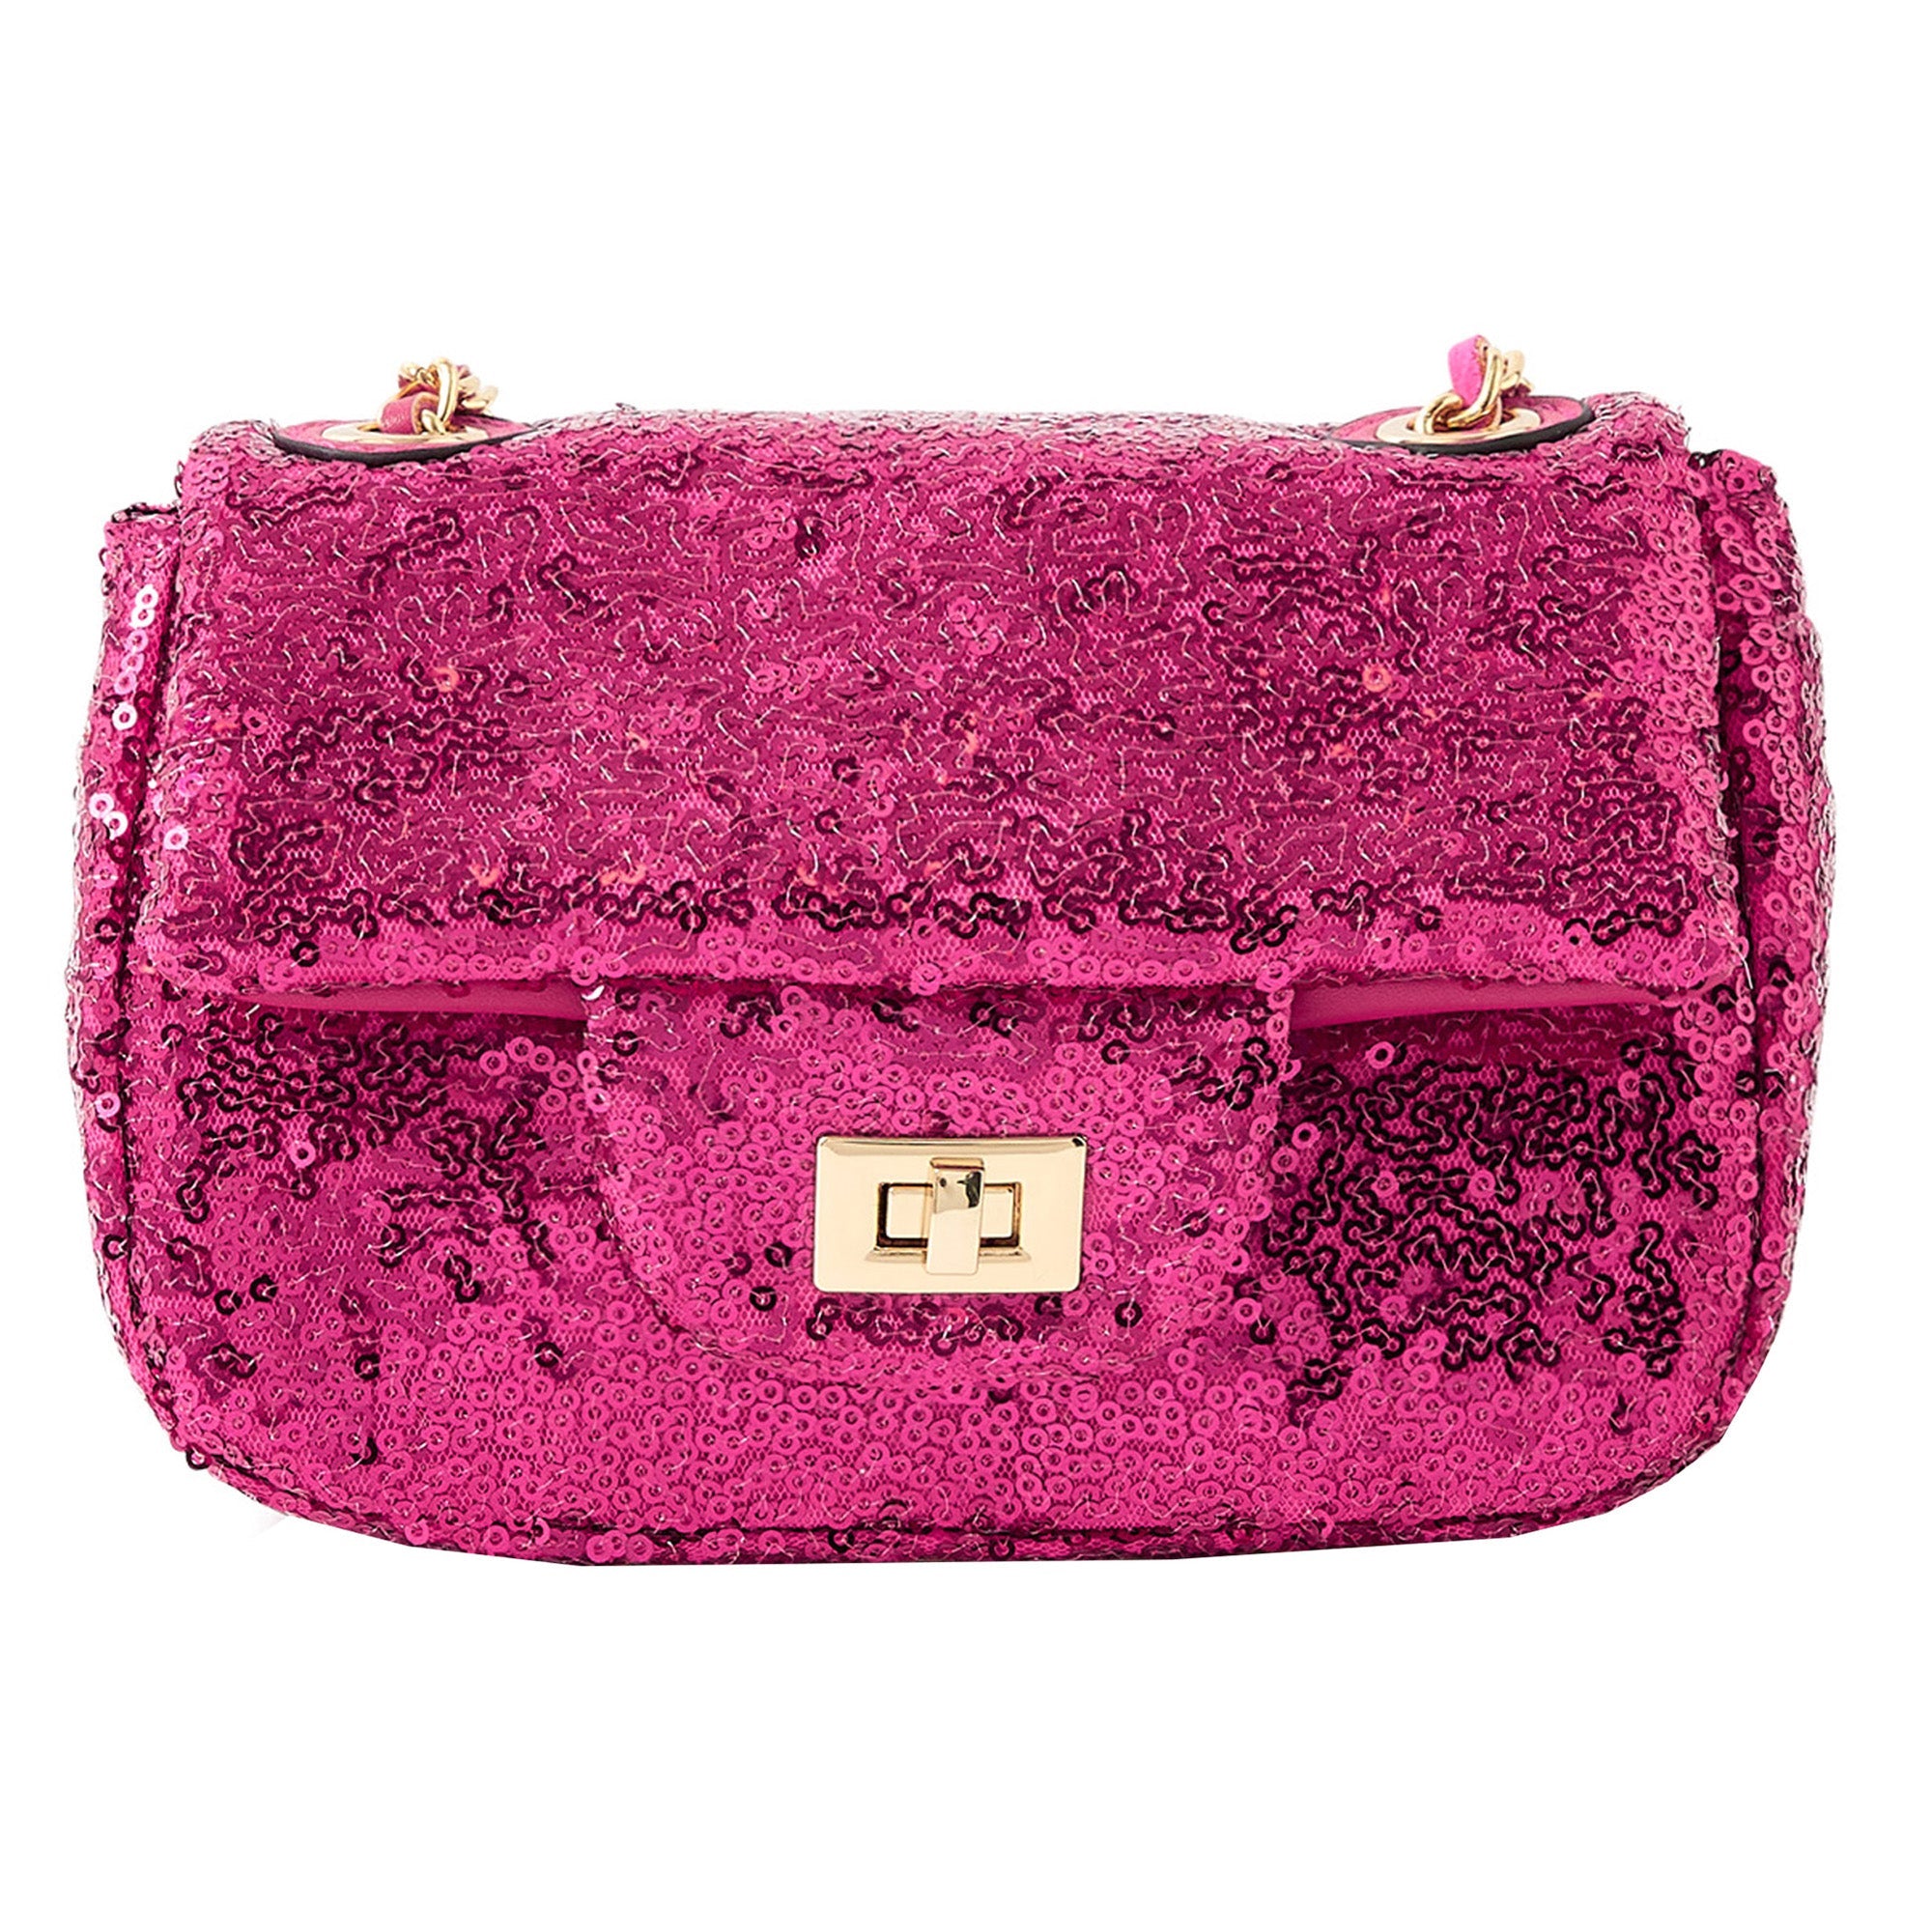 Buy Lovely Sequin Dual Tone Handbag Online - fredefy – Fredefy